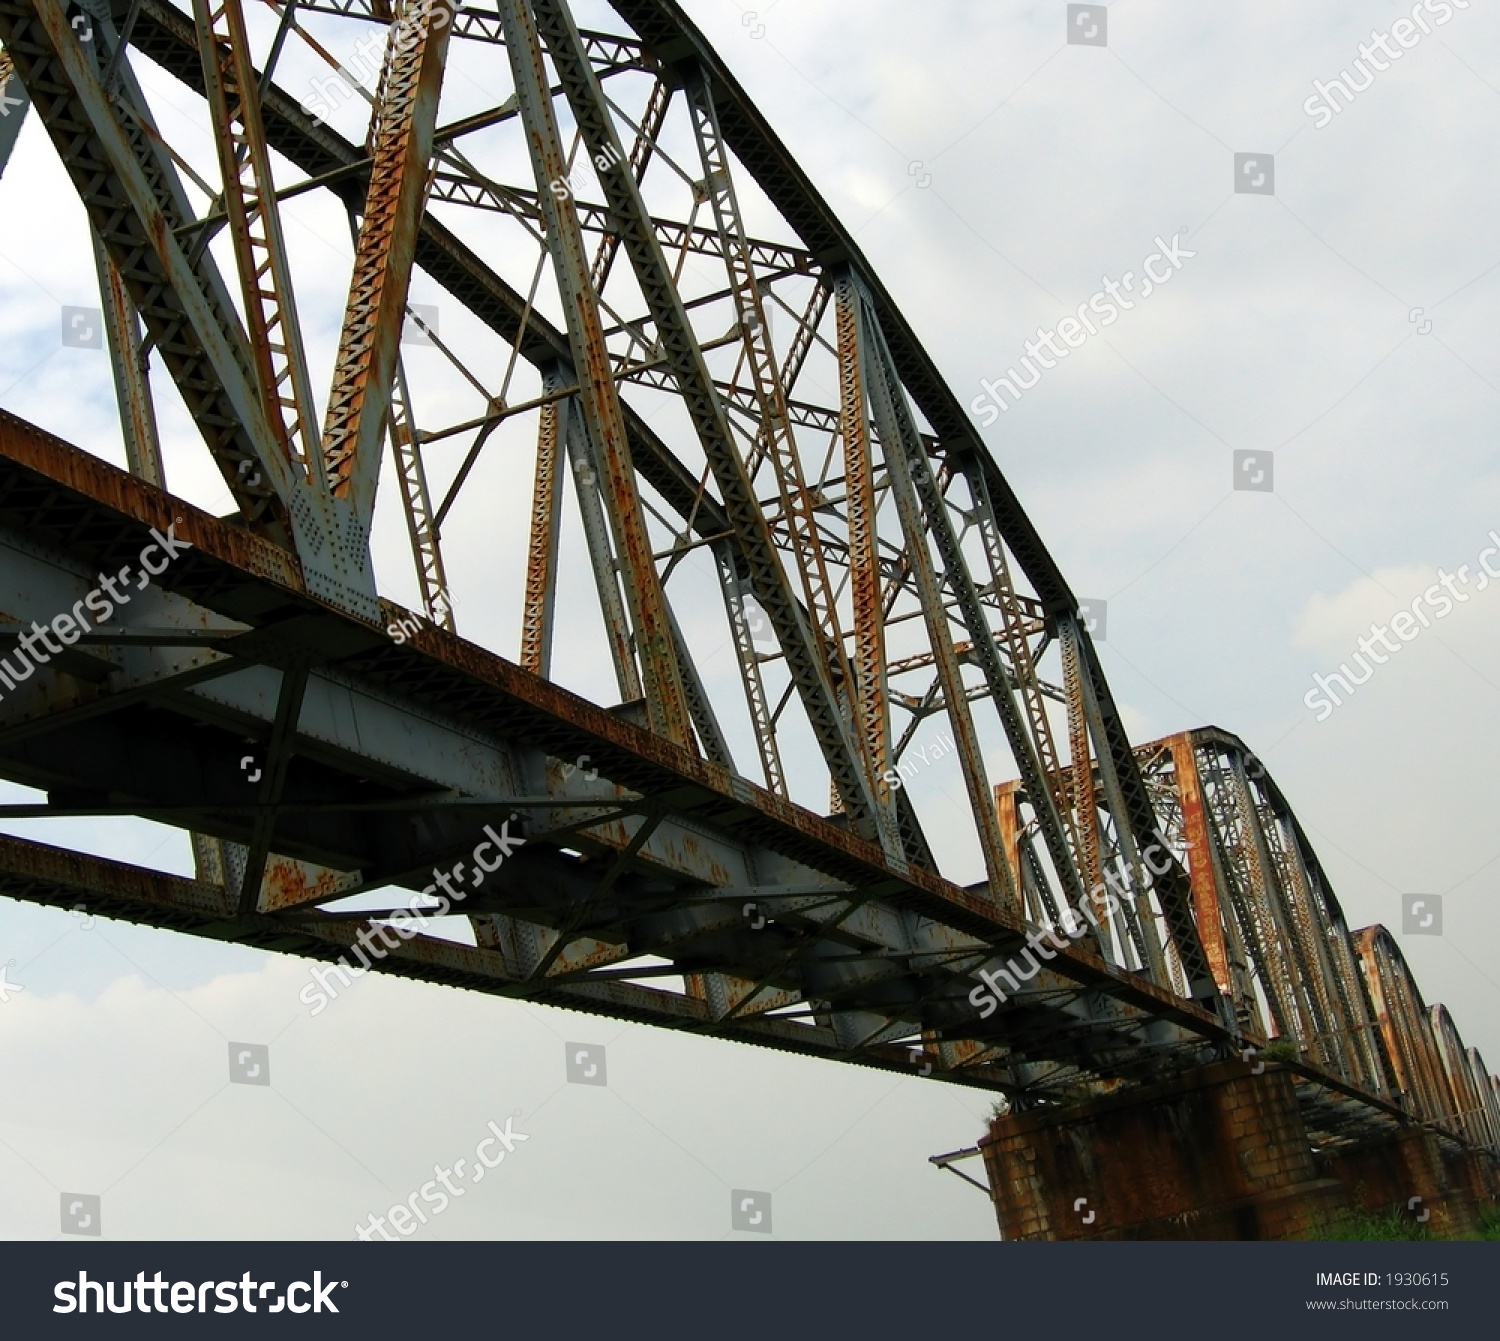 Massive Old Railway Bridge Seen Below Stock Photo 1930615 - Shutterstock